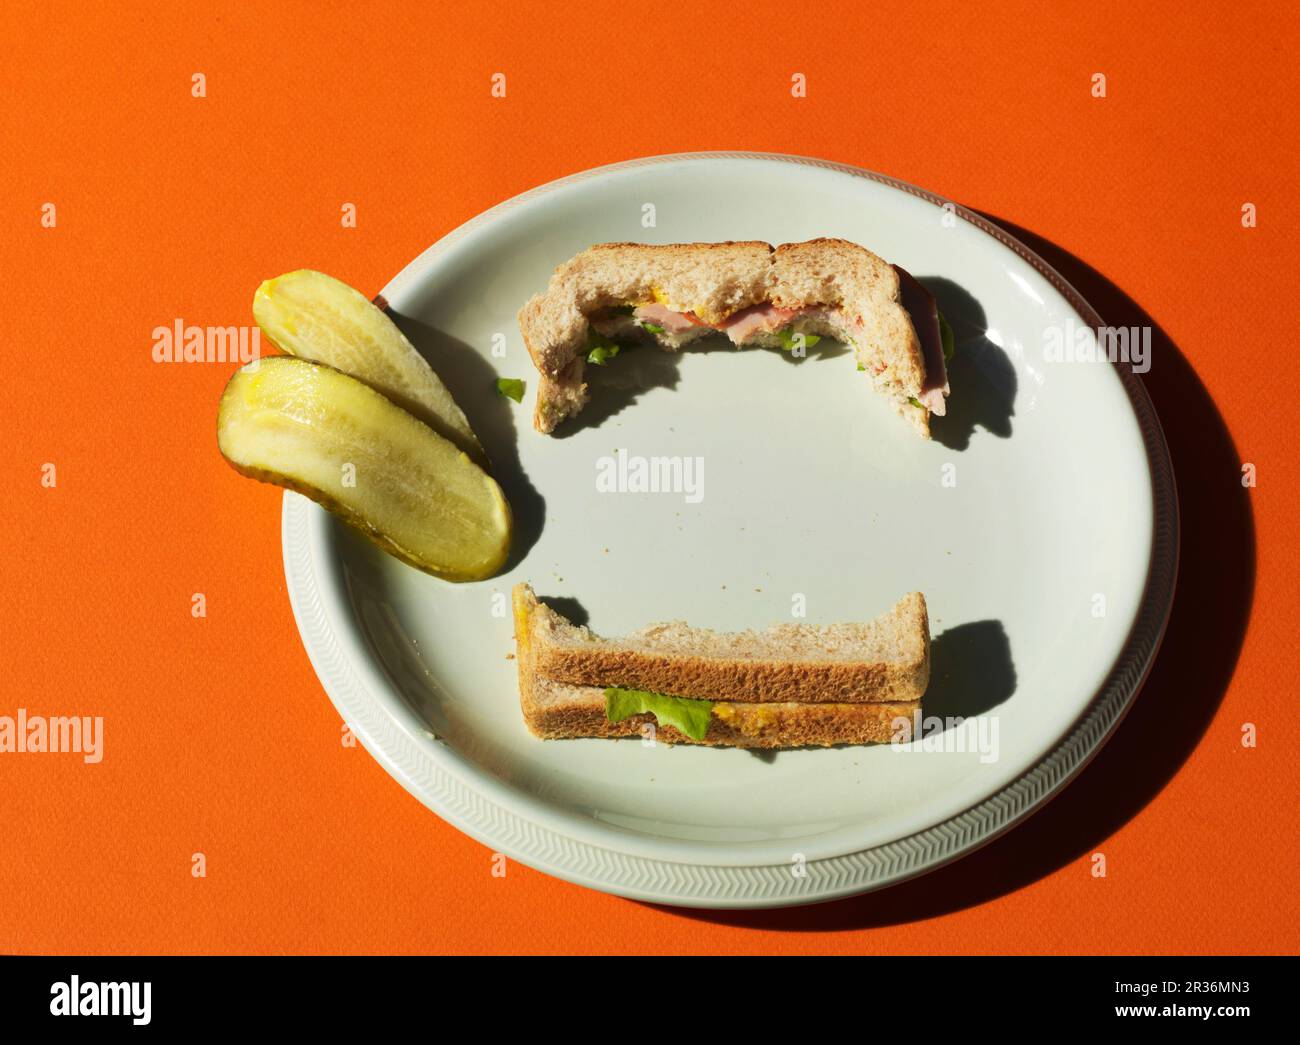 Un sandwich New York Deli a metà pasto e una zucca affettata su un piatto bianco Foto Stock